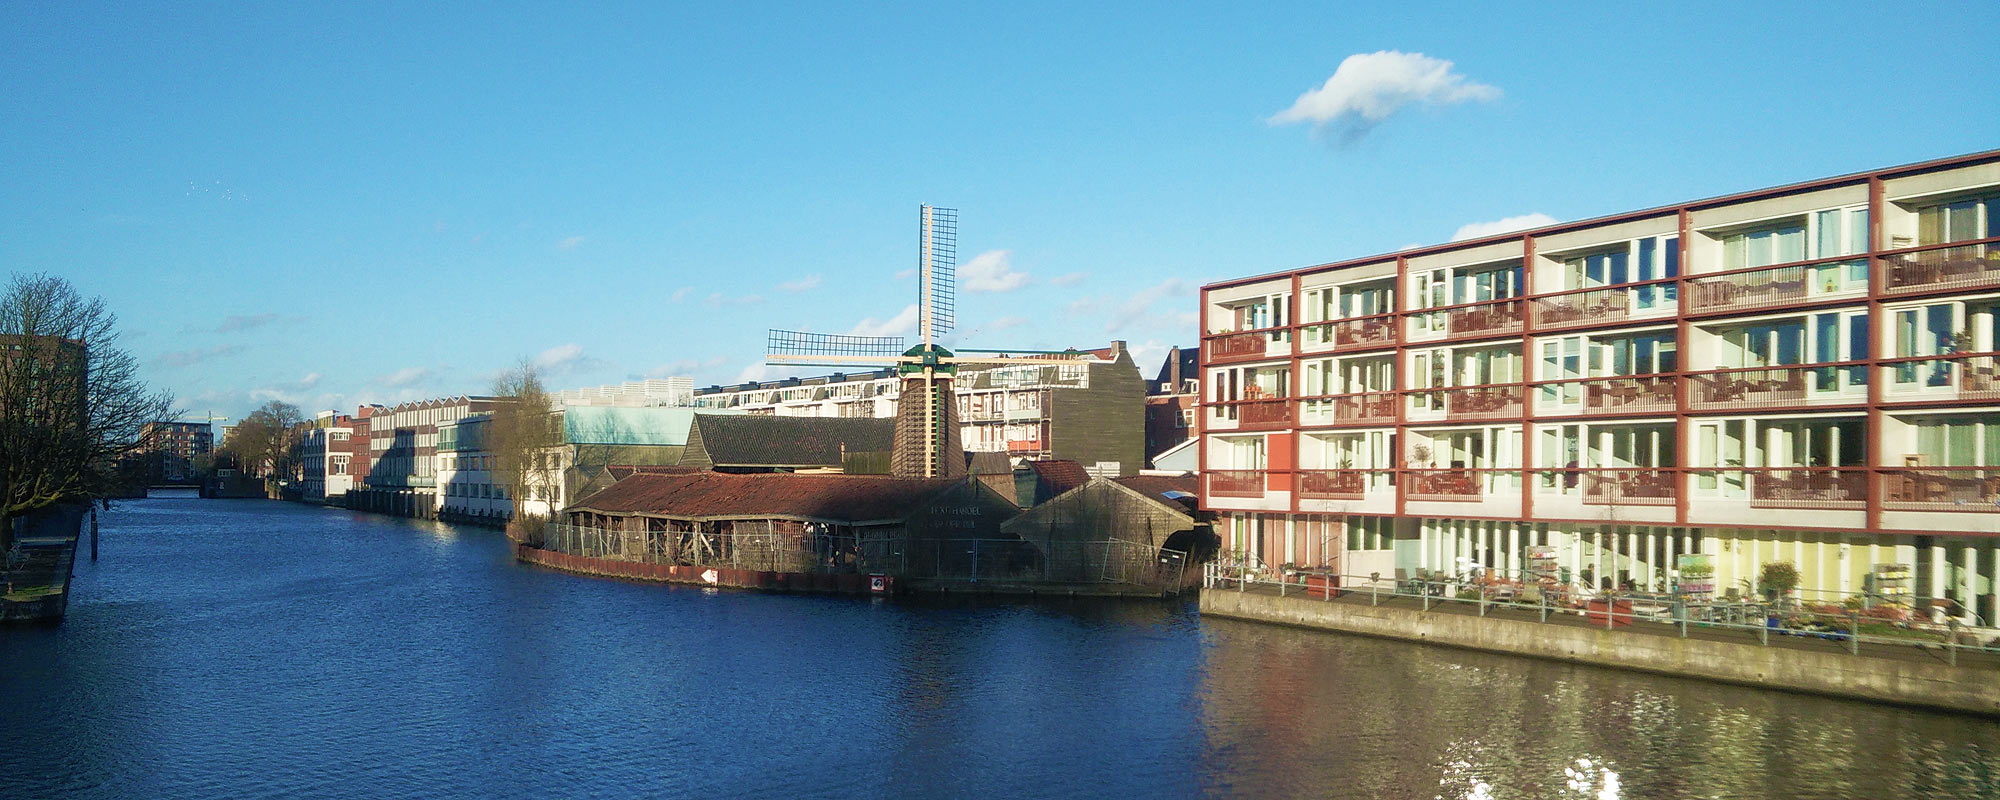 Mühle Molen de Otter im Westen Amsterdams